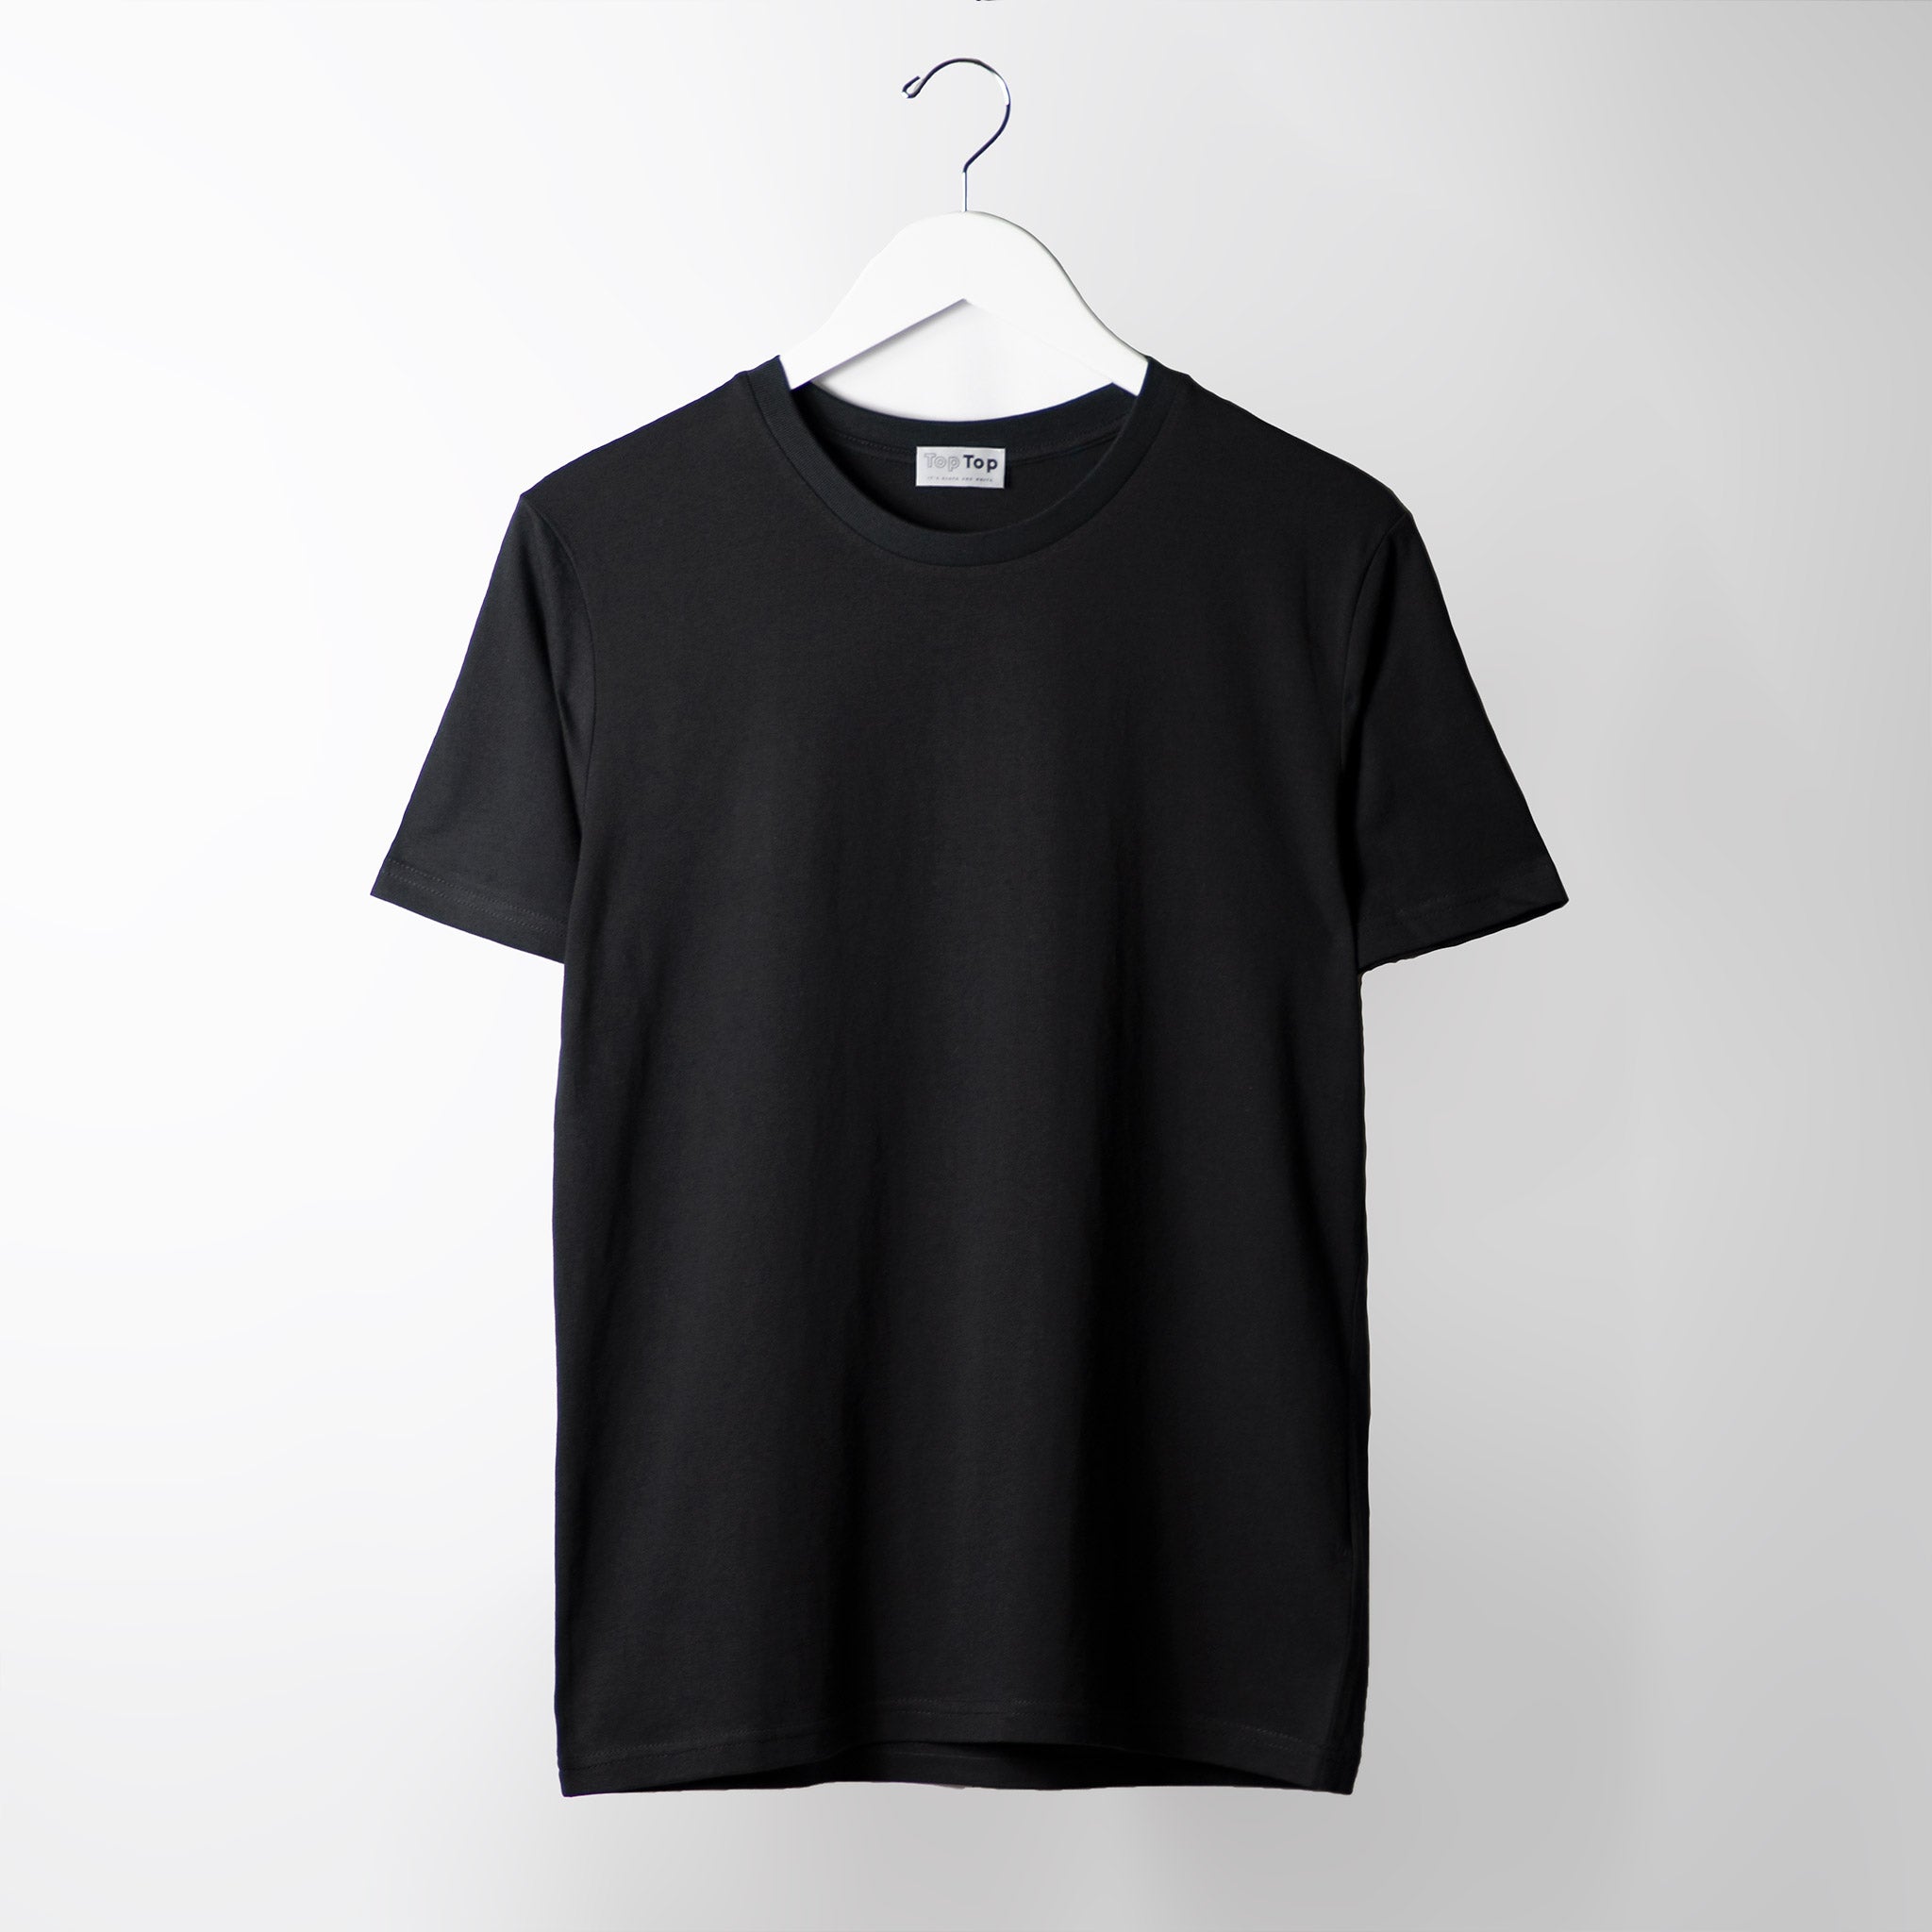 black tee shirt plain